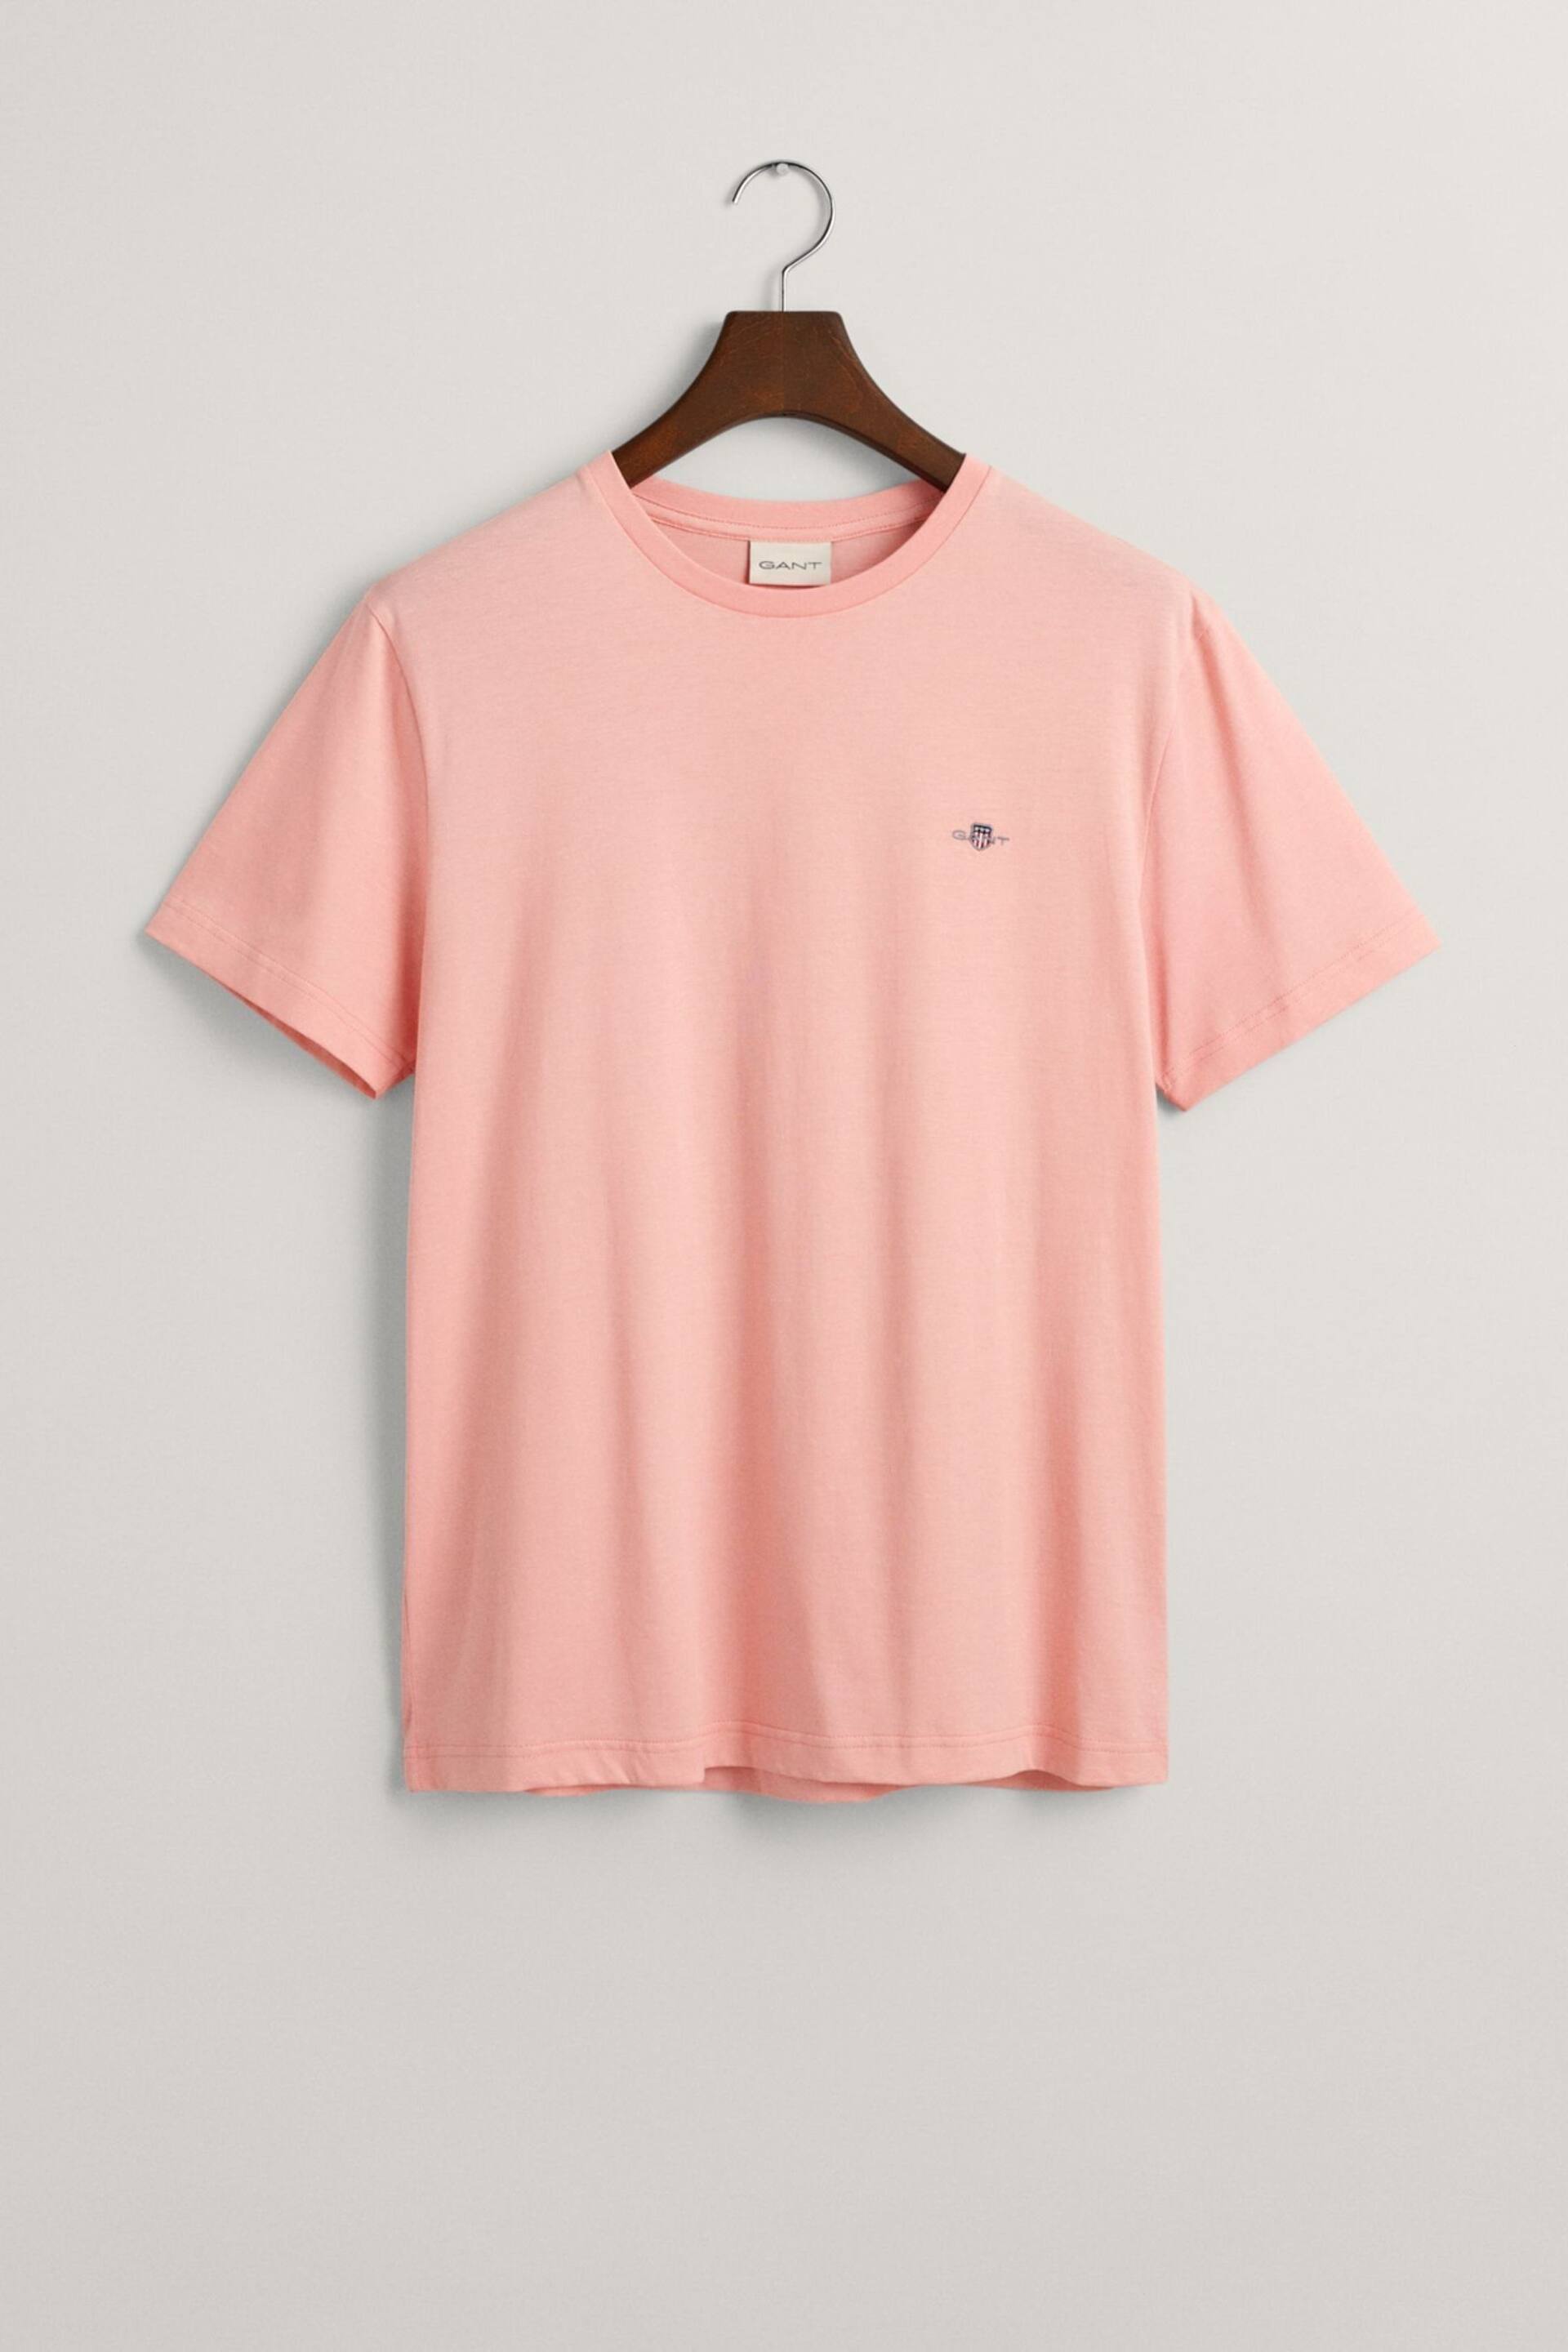 GANT Pink Shield Logo T-Shirt - Image 5 of 5